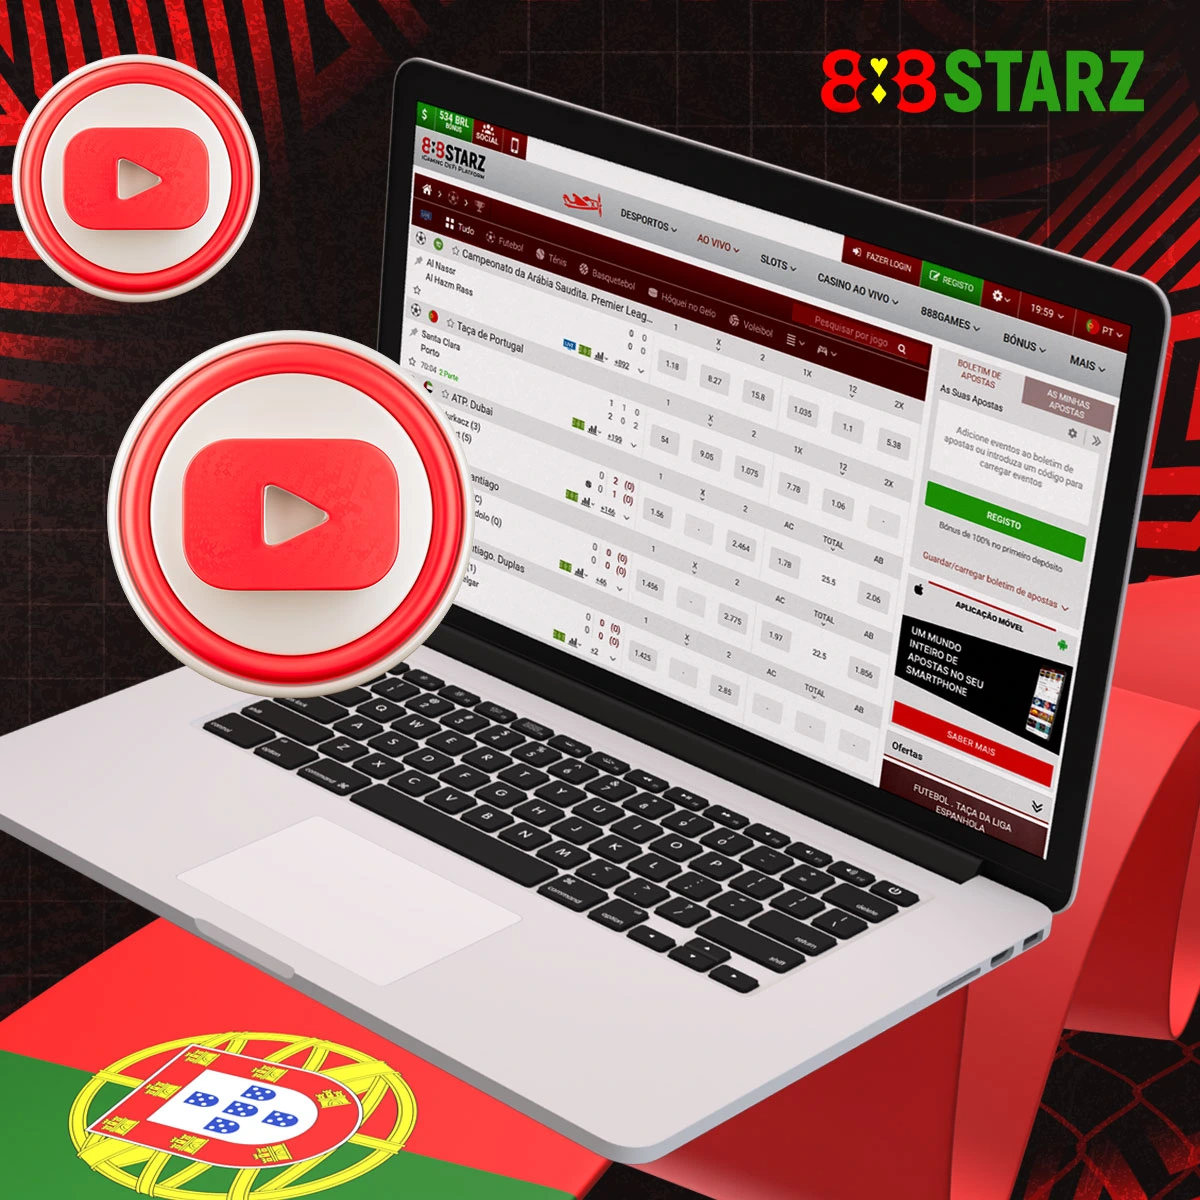 Informações sobre as transmissões online no sítio Web do 888Starz